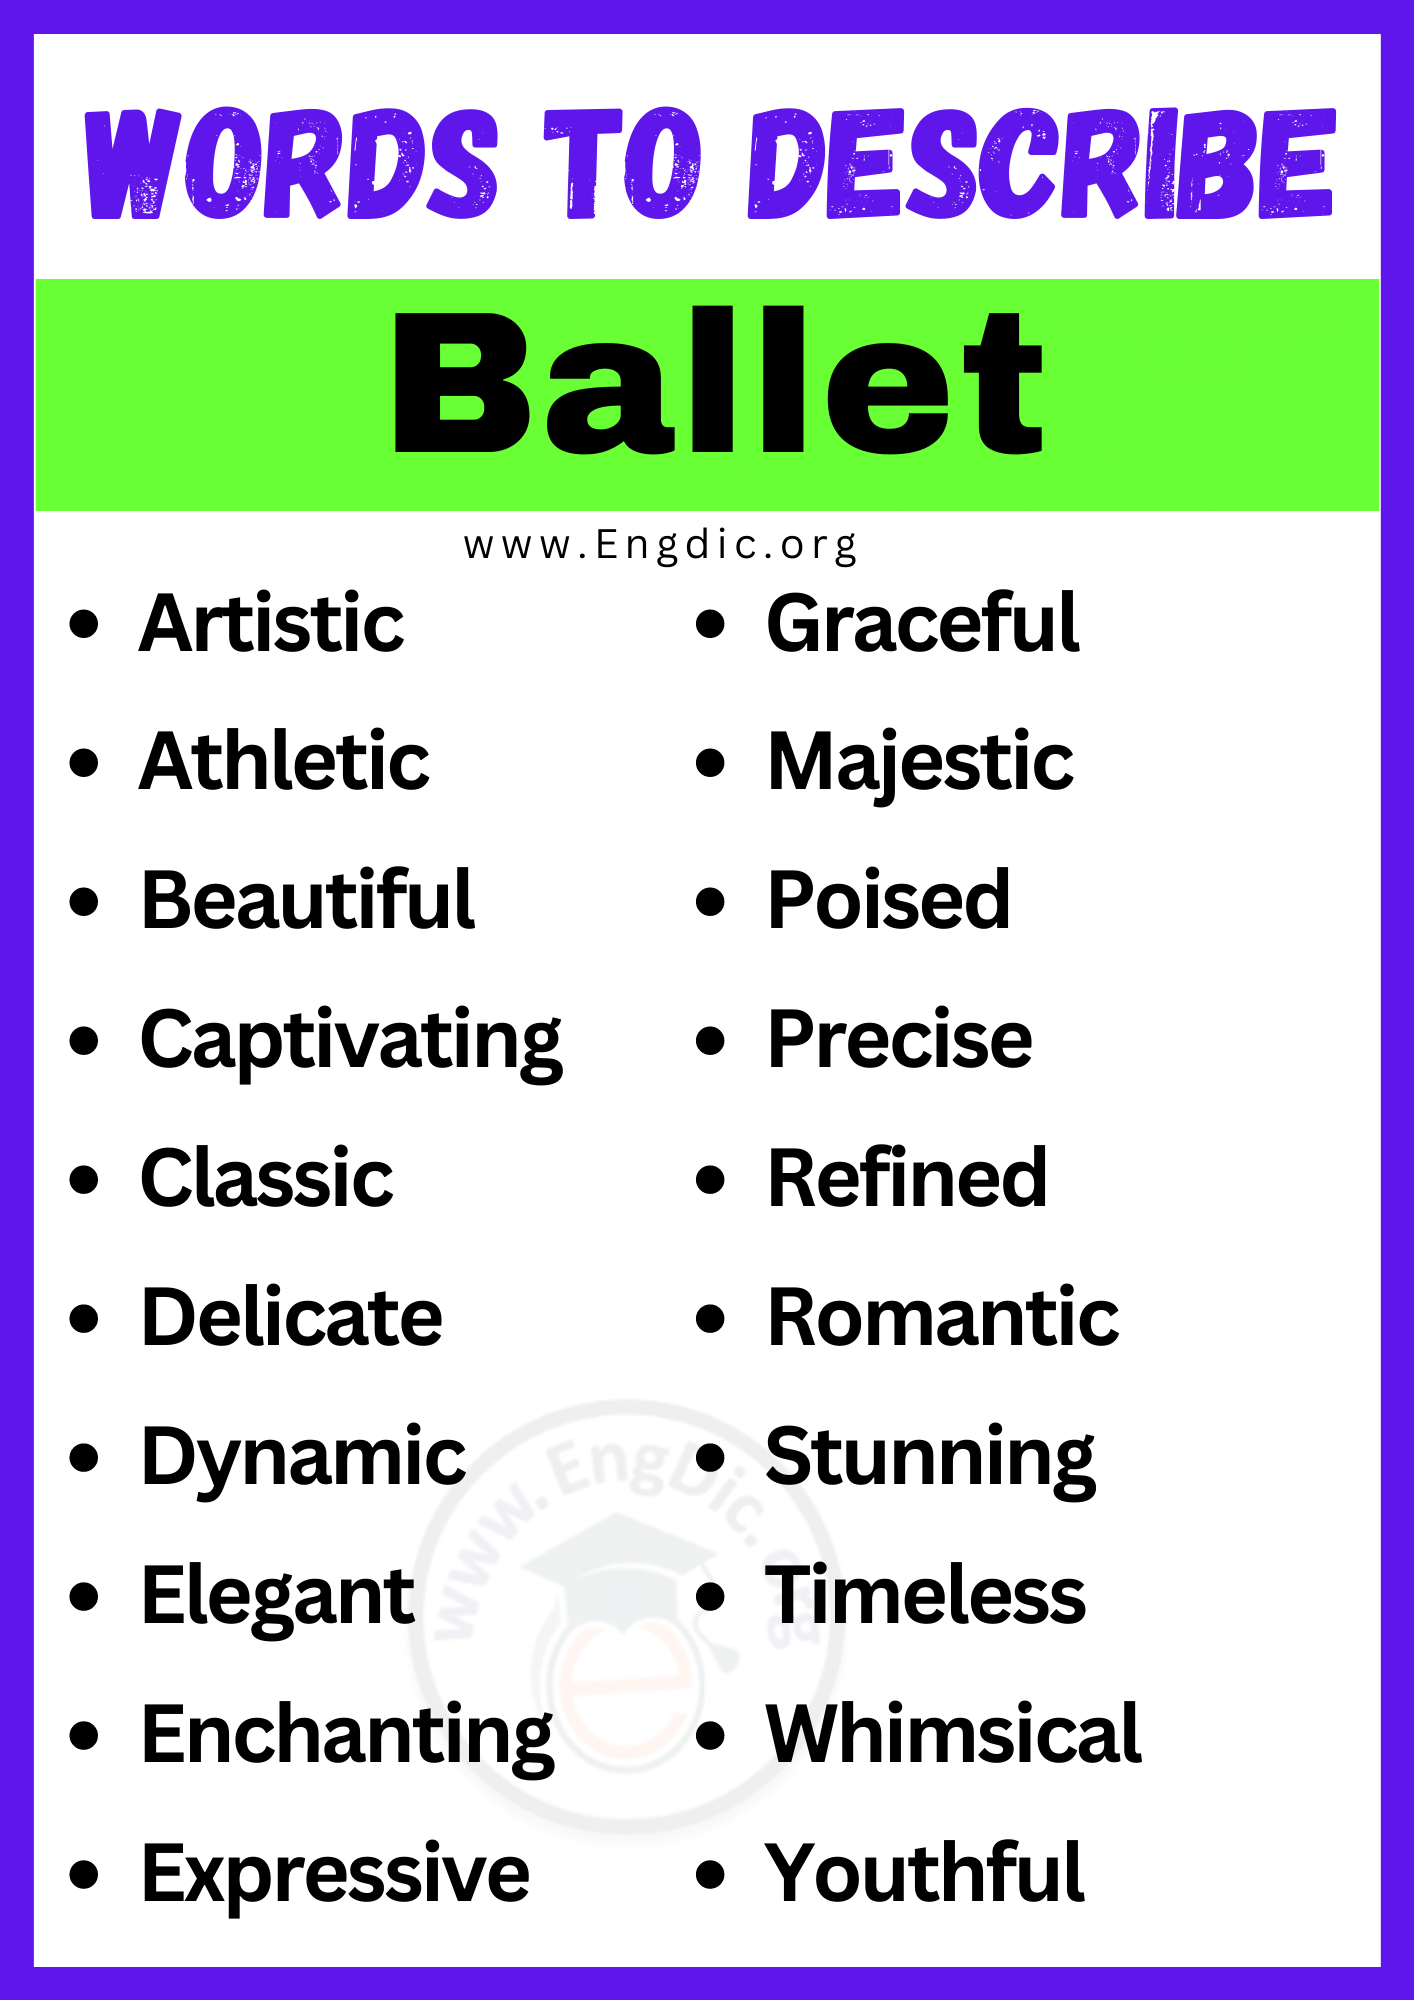 Words to Describe Ballet